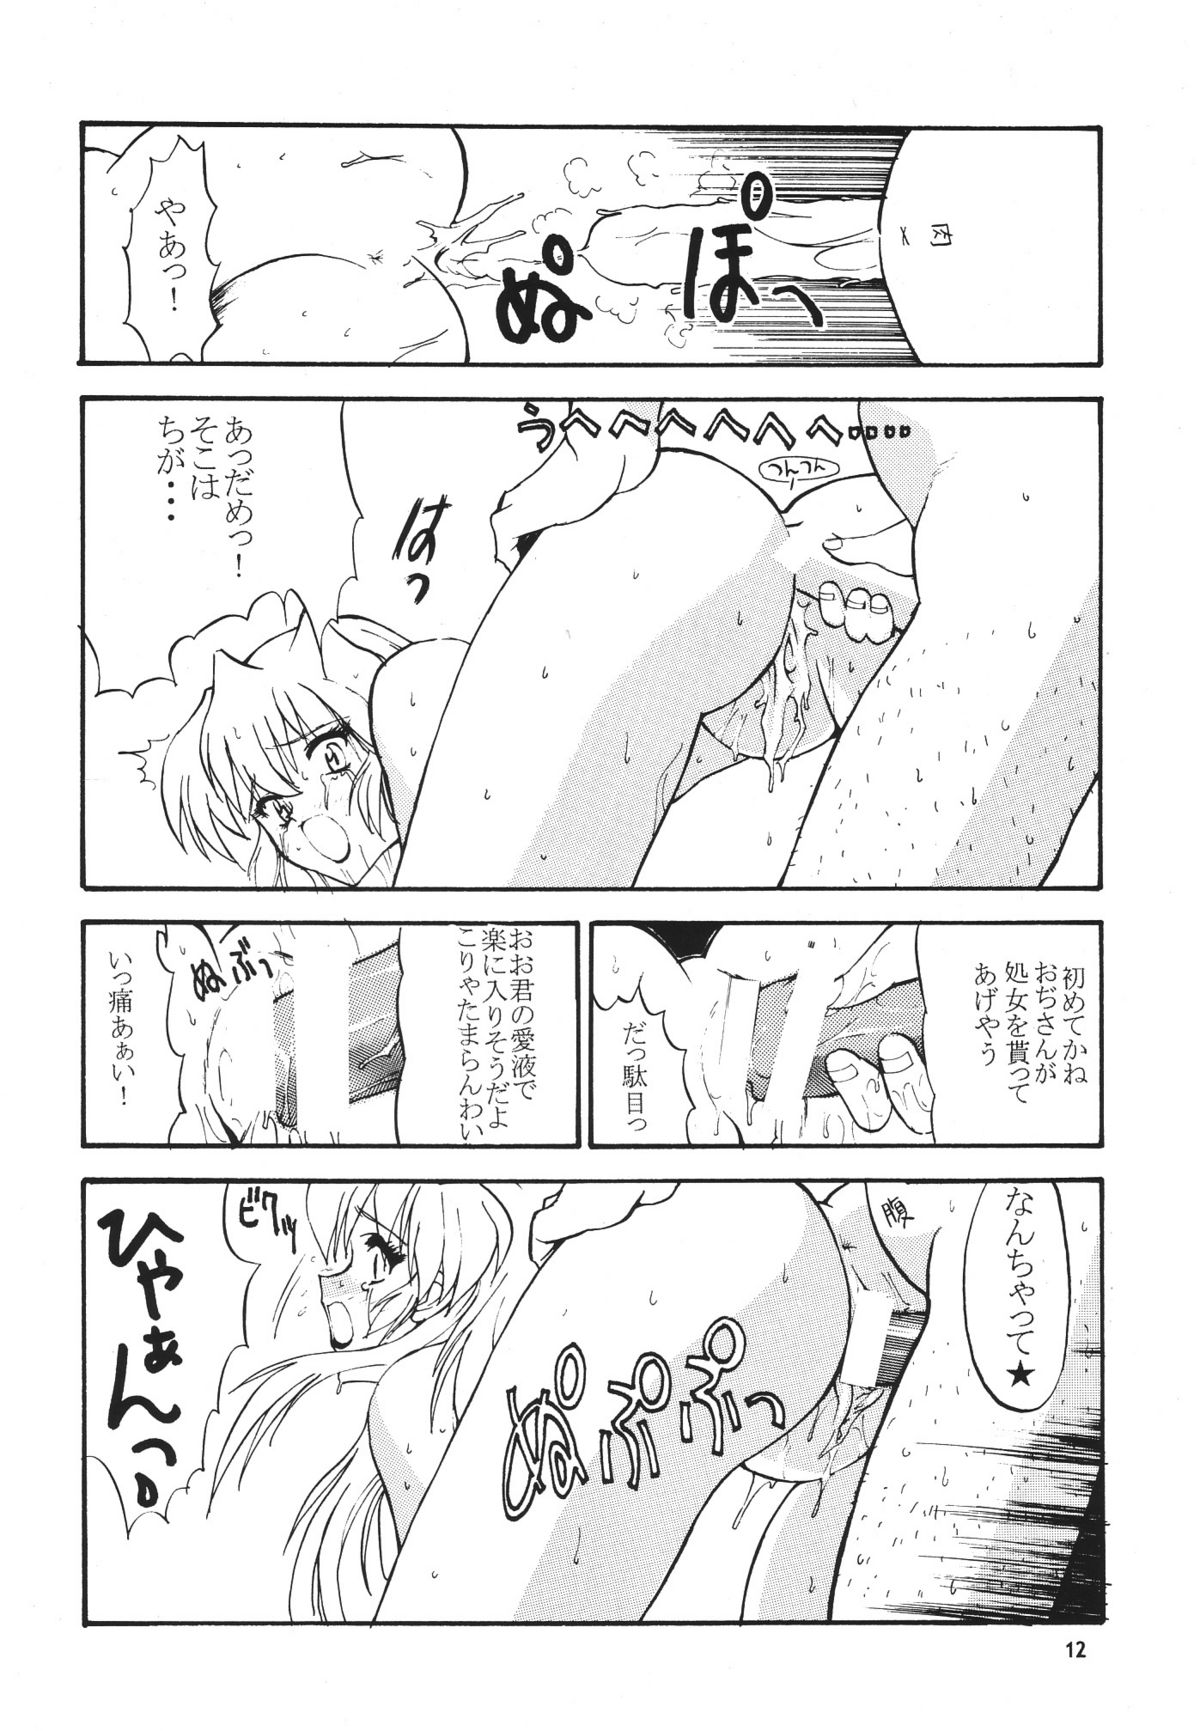 [Seishun No Nigirikobushi!] Favorite Visions 2 (Sailor Moon, AIKa) page 14 full